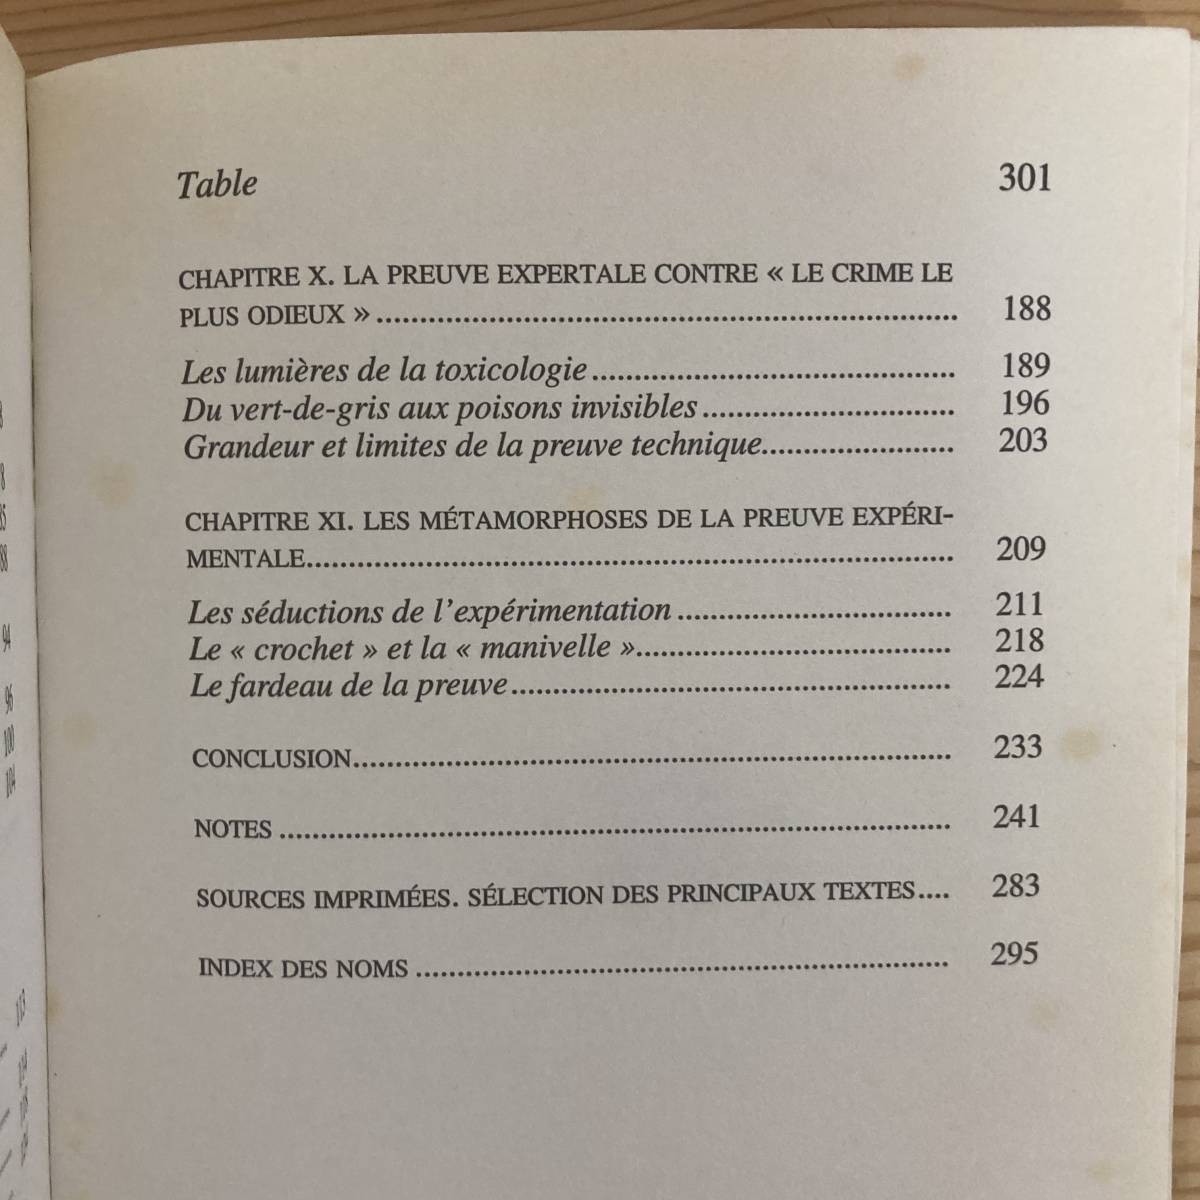 【仏語洋書】Les experts du crime: La medicine legale en France au XIXe siecle / Frederic Chauvaud（著）【フランス法医学】_画像6